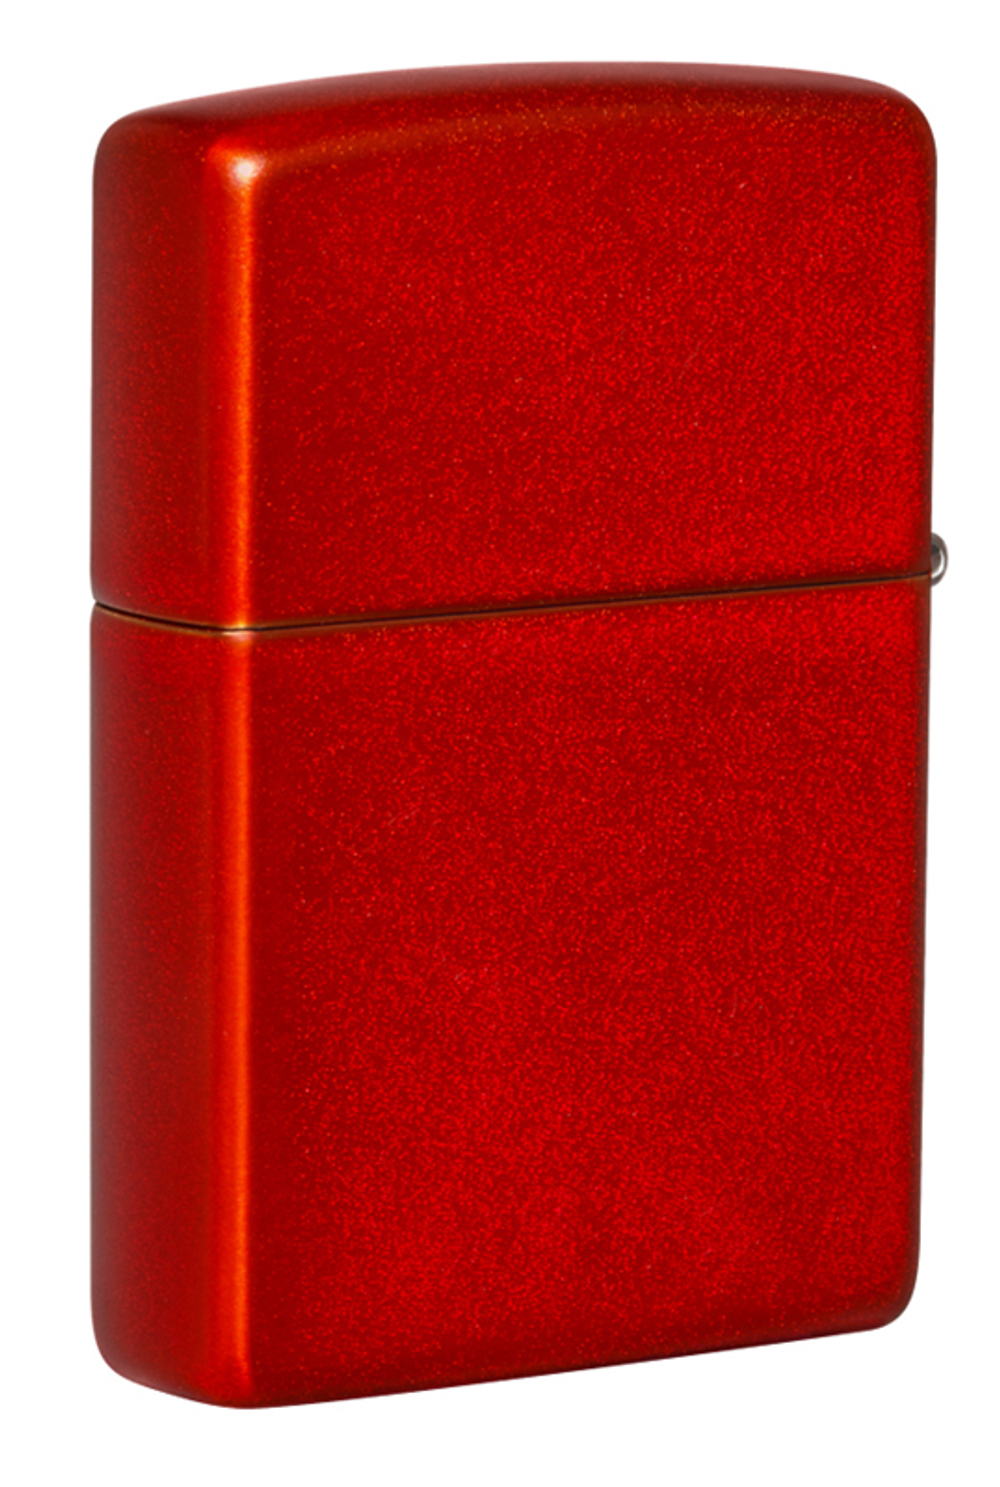 Легендарная классическая американская бензиновая широкая зажигалка ZIPPO Classic Metallic Red 49475 в подарочной коробке